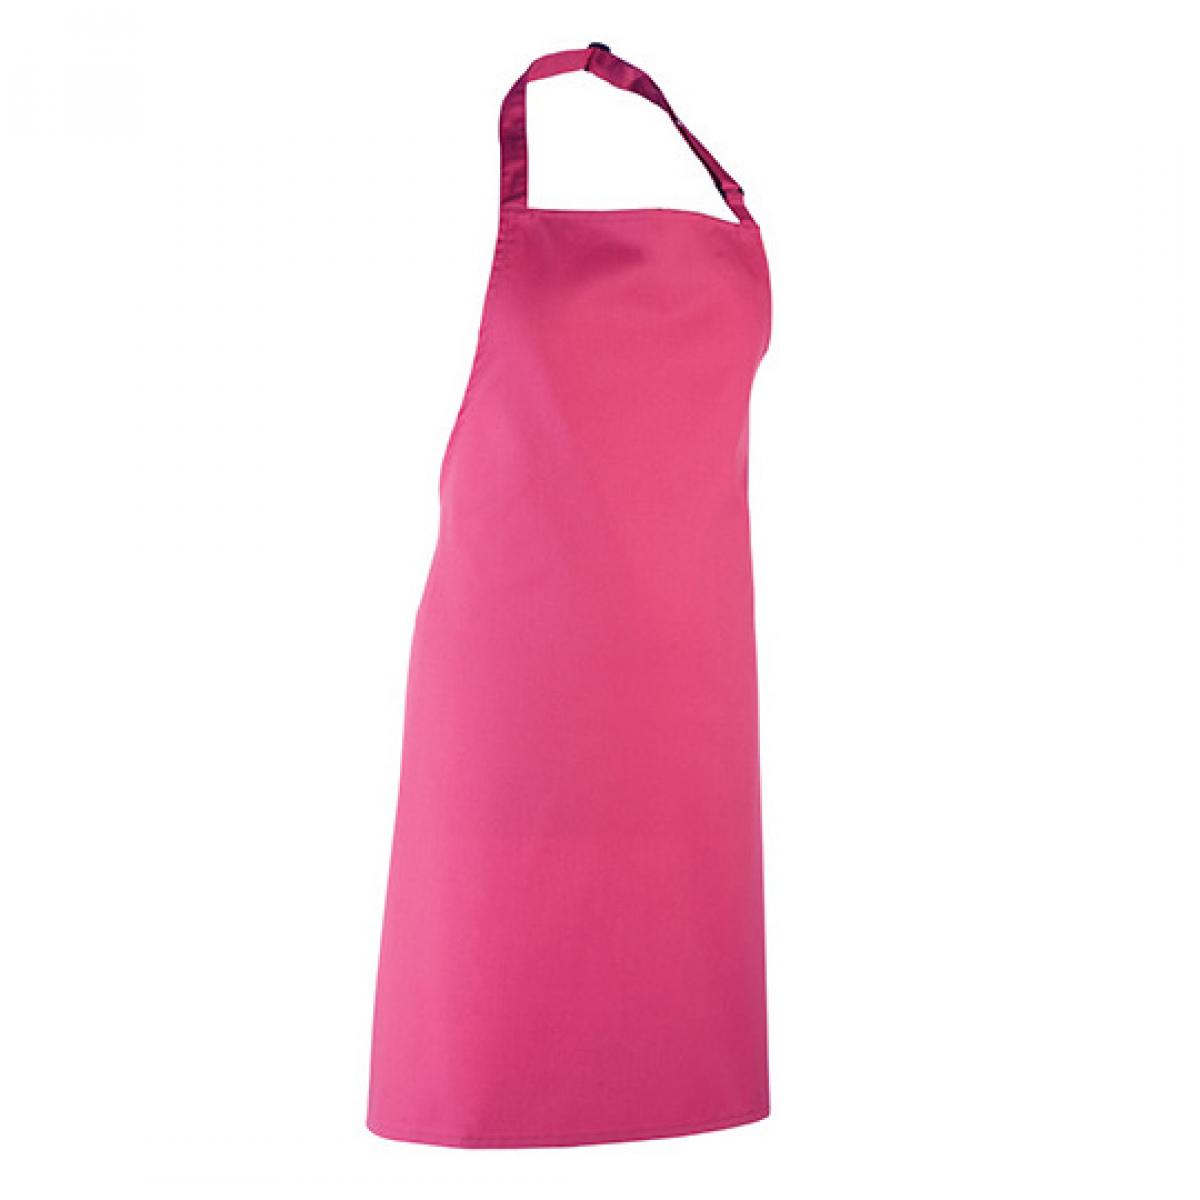 Hersteller: Premier Workwear Herstellernummer: PR150 Artikelbezeichnung: Latzschürze ´Colours´ - Waschbar bei 60 °C Farbe: Hot Pink (ca. Pantone 214c)